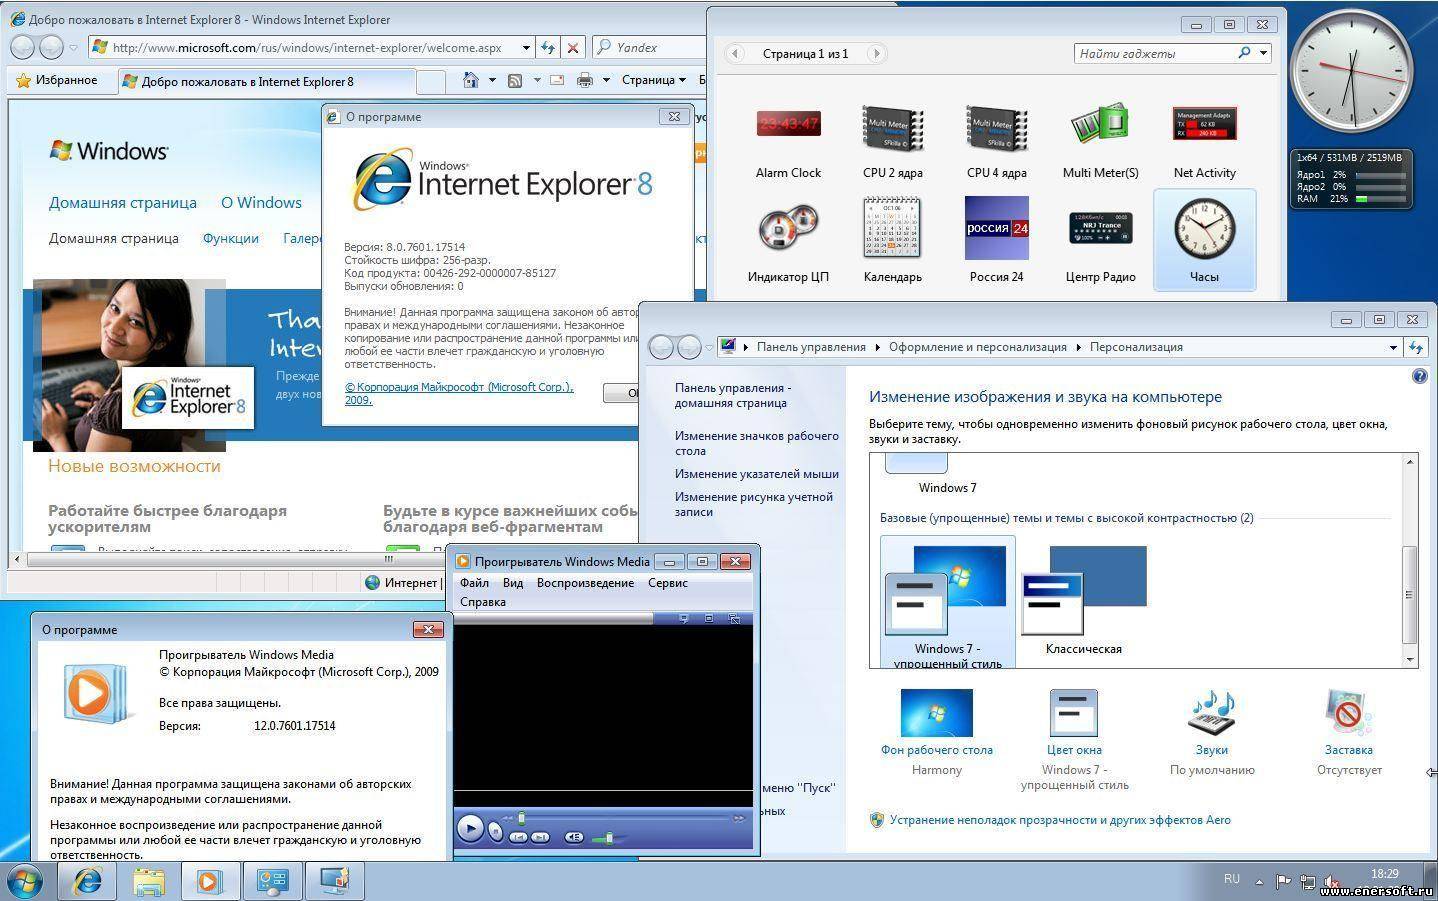 Выпуск обновлений версии. Программы для смены иконок Windows 7. Цвет и внешний вид окна Windows 7. Виндовс 67. Список цвет окна виндовс 7.